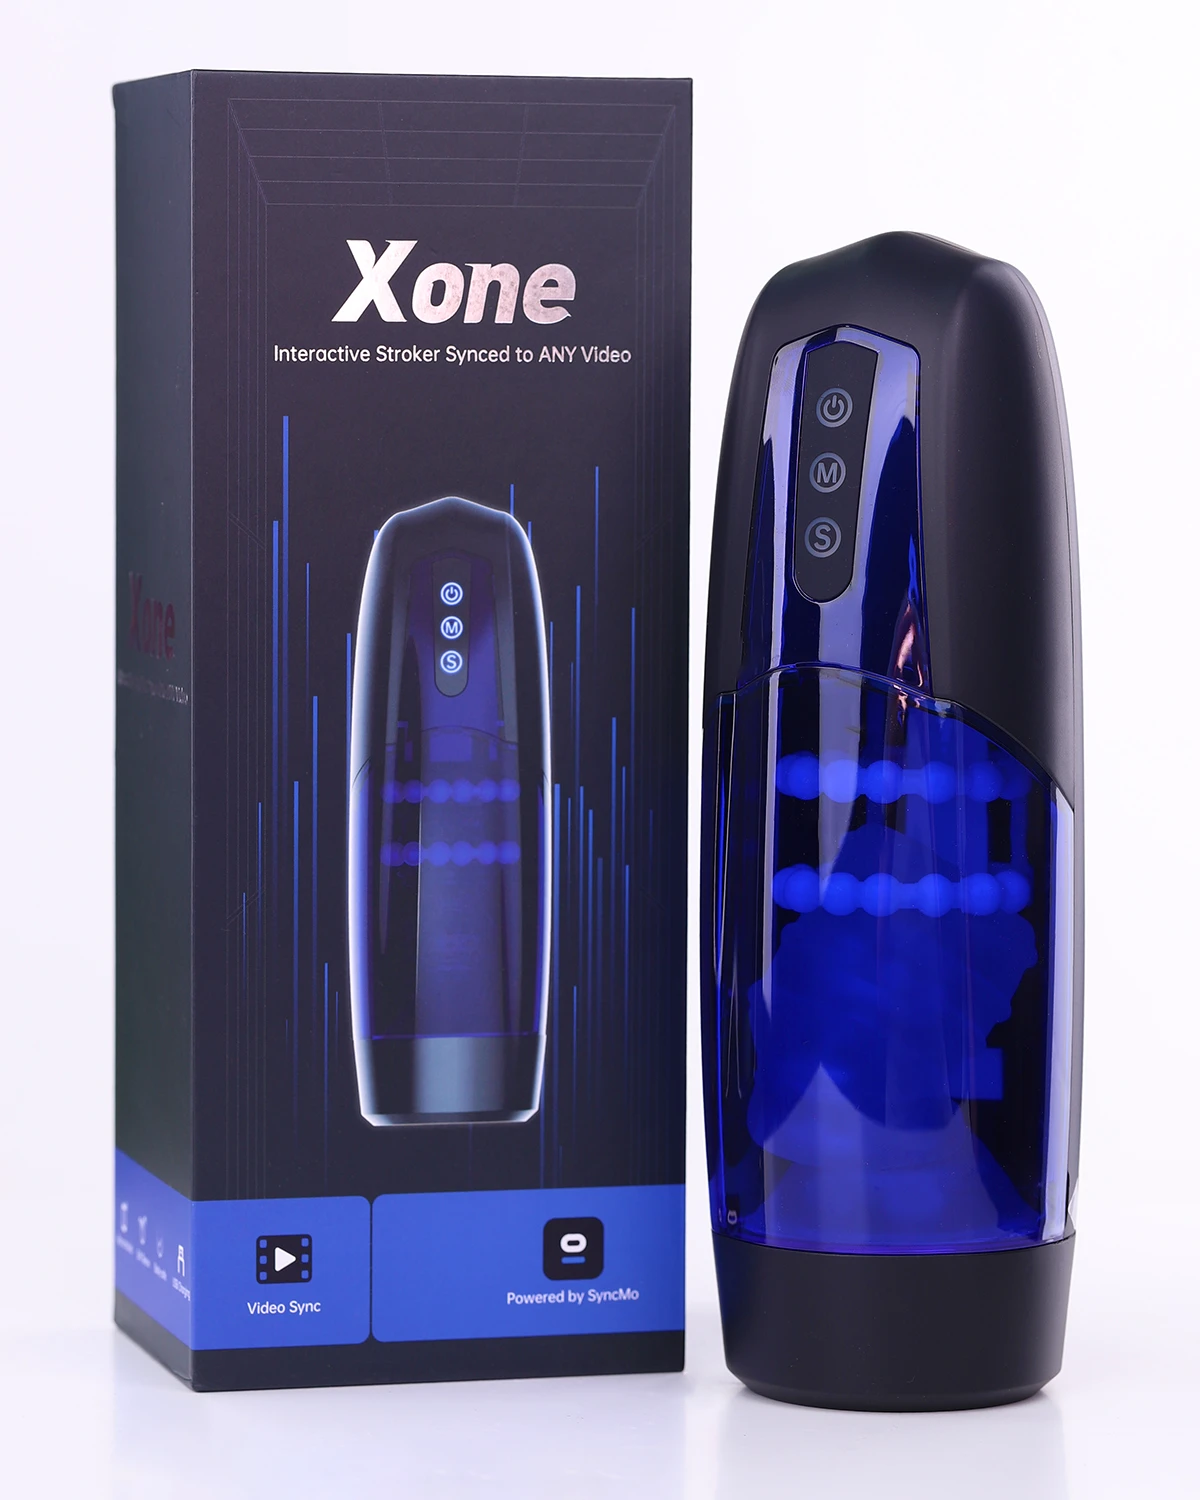 Magic Xone áp dụng công nghệ tương tác qua video